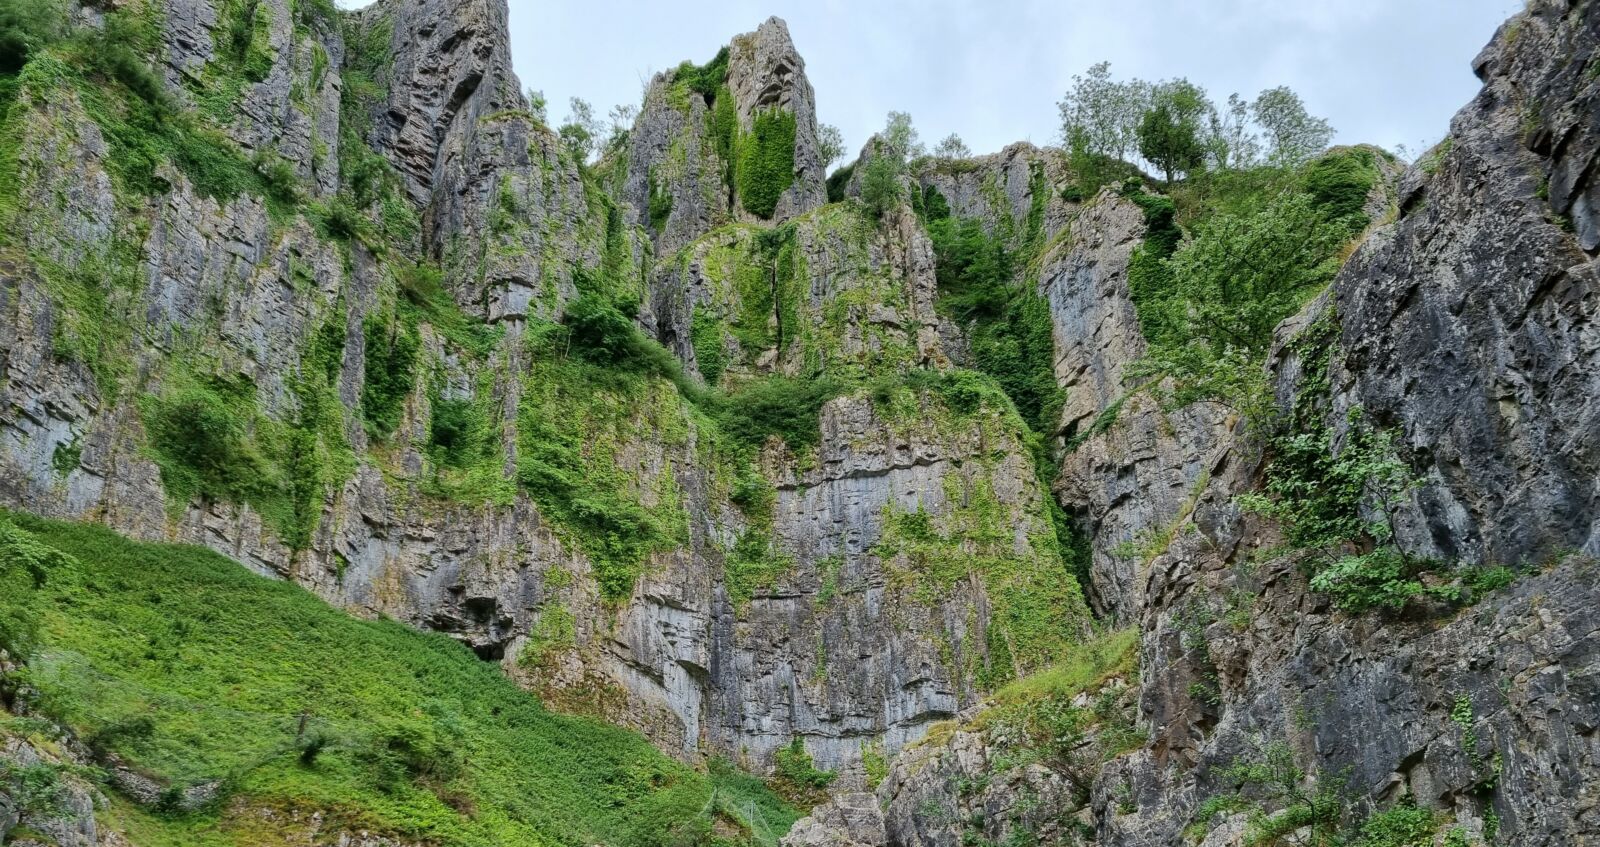 Cliffs and moss